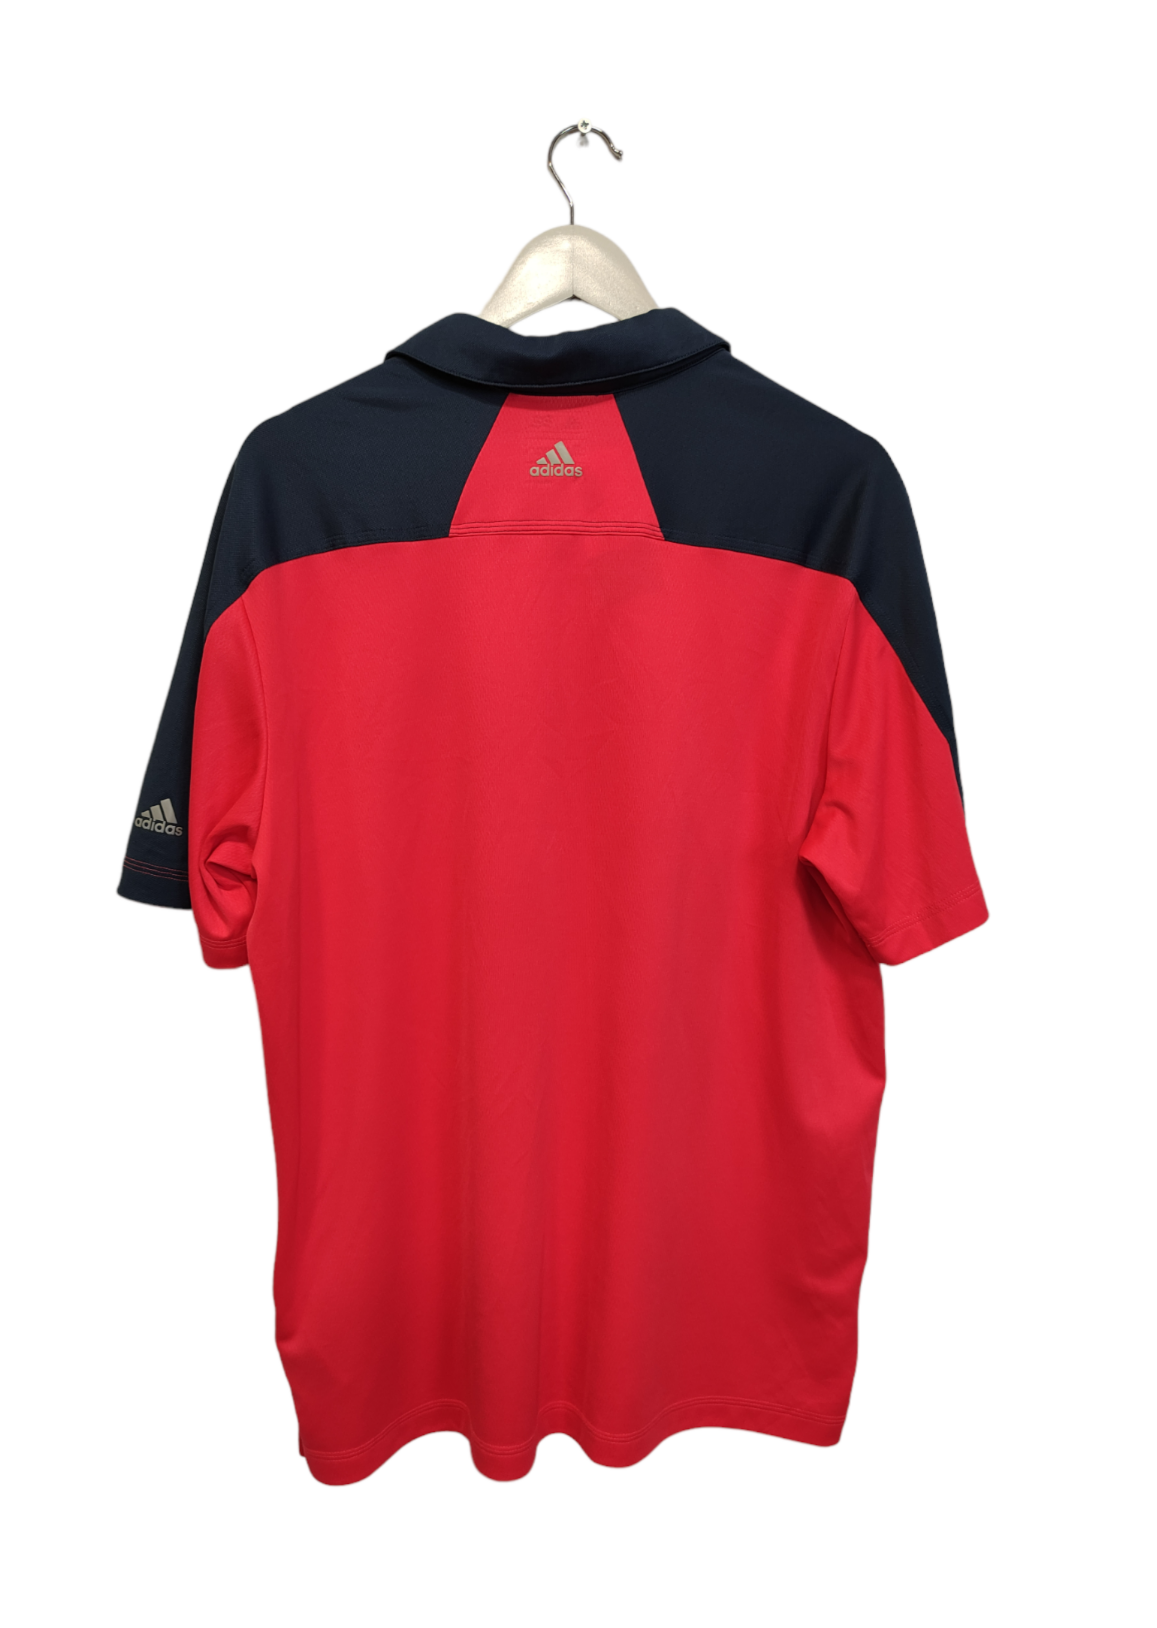 Αθλητική Ανδρική Μπλούζα  ADIDAS - T-Shirt σε Κοραλί- Μπλε Χρώμα (Large)